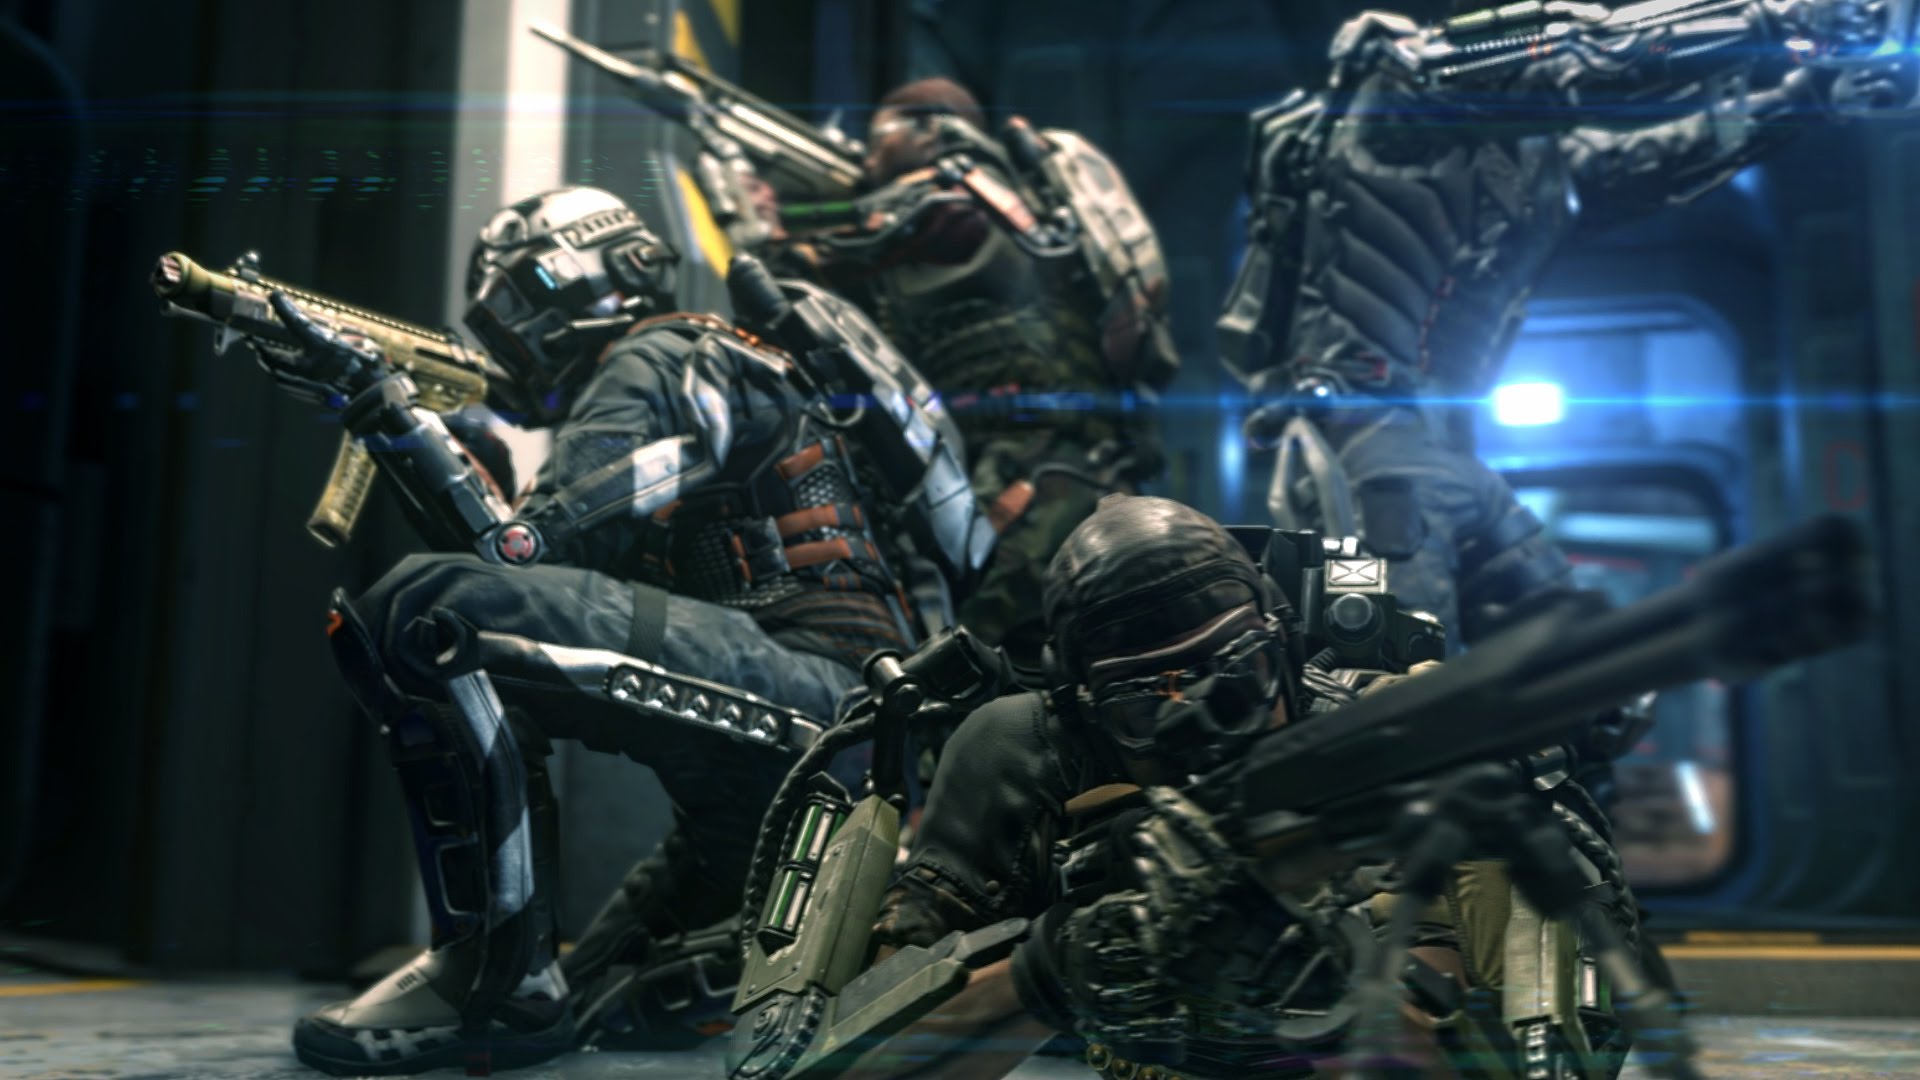 Call of Duty: Advanced Warfare tem detalhes vazados na web antes do  lançamento - Softonic